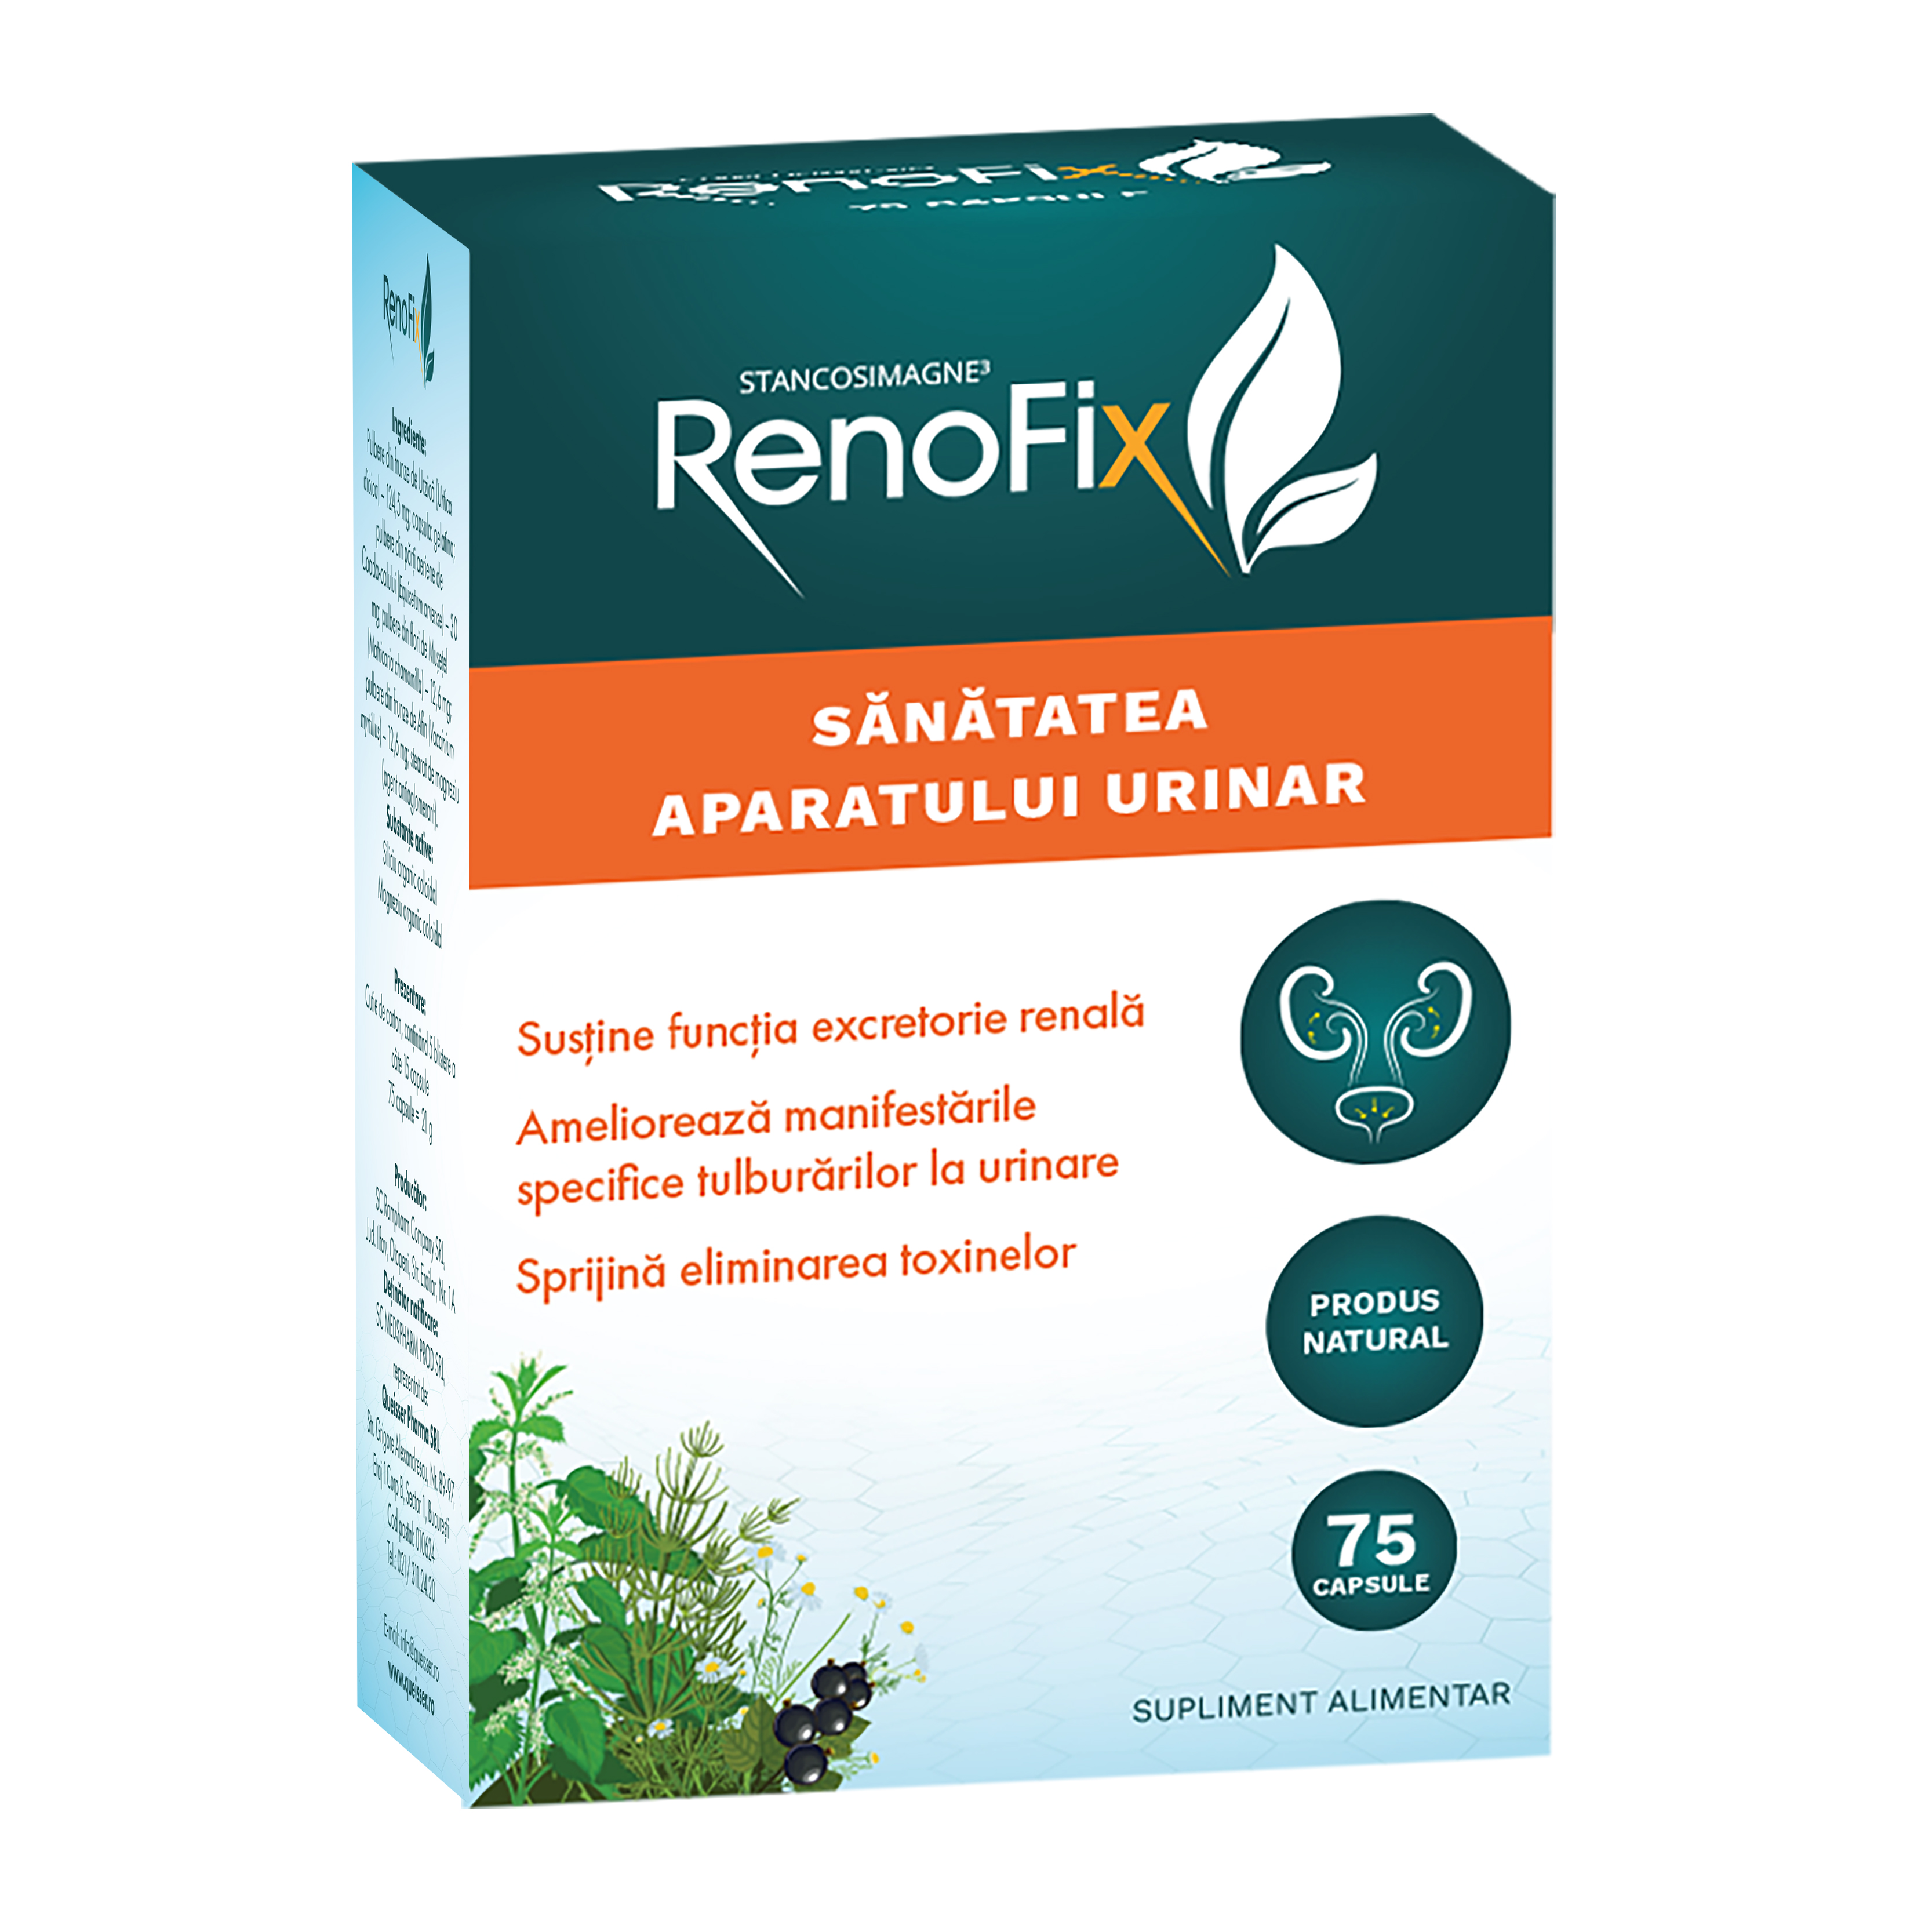 Dezinfectante urinare - RenoFix pentru Sănătatea aparatului urinar, 75 capsule, sinapis.ro